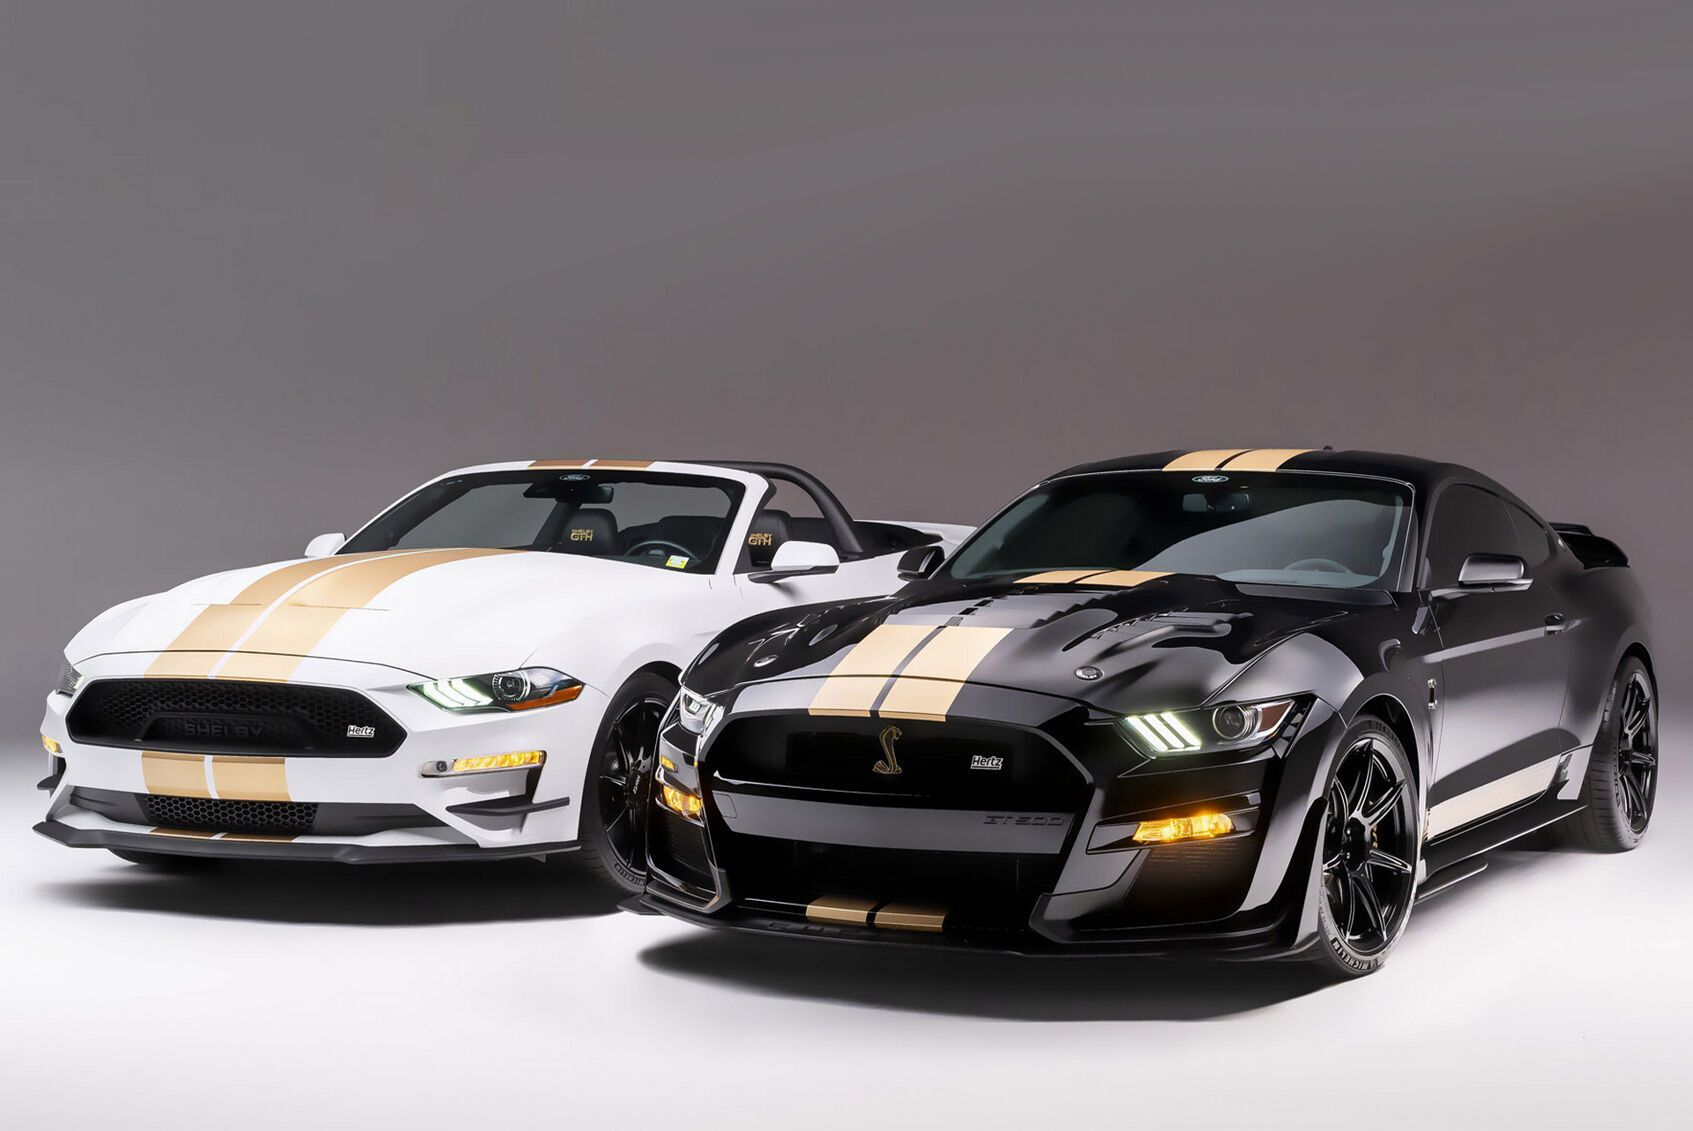 Компания Hertz предлагает своим клиентам новые купе и кабриолеты Ford Mustang. Машины подготовлены в особой фирменной "ливрее" компанией Shelby American